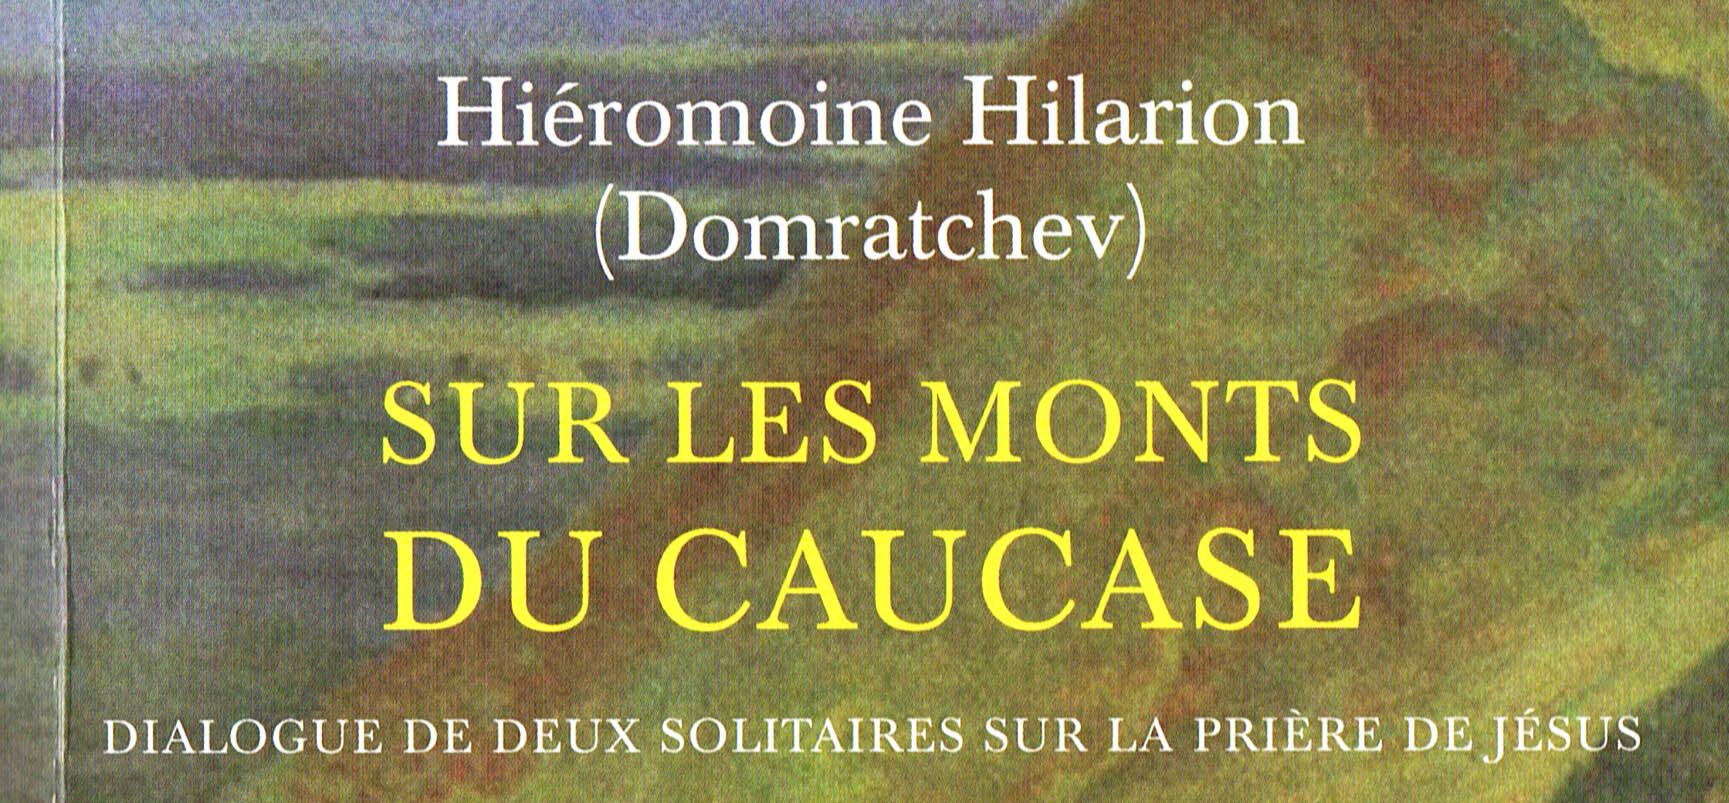 Recension: Hiéromoine Hilarion (Domratchev), « Sur les monts du Caucase »